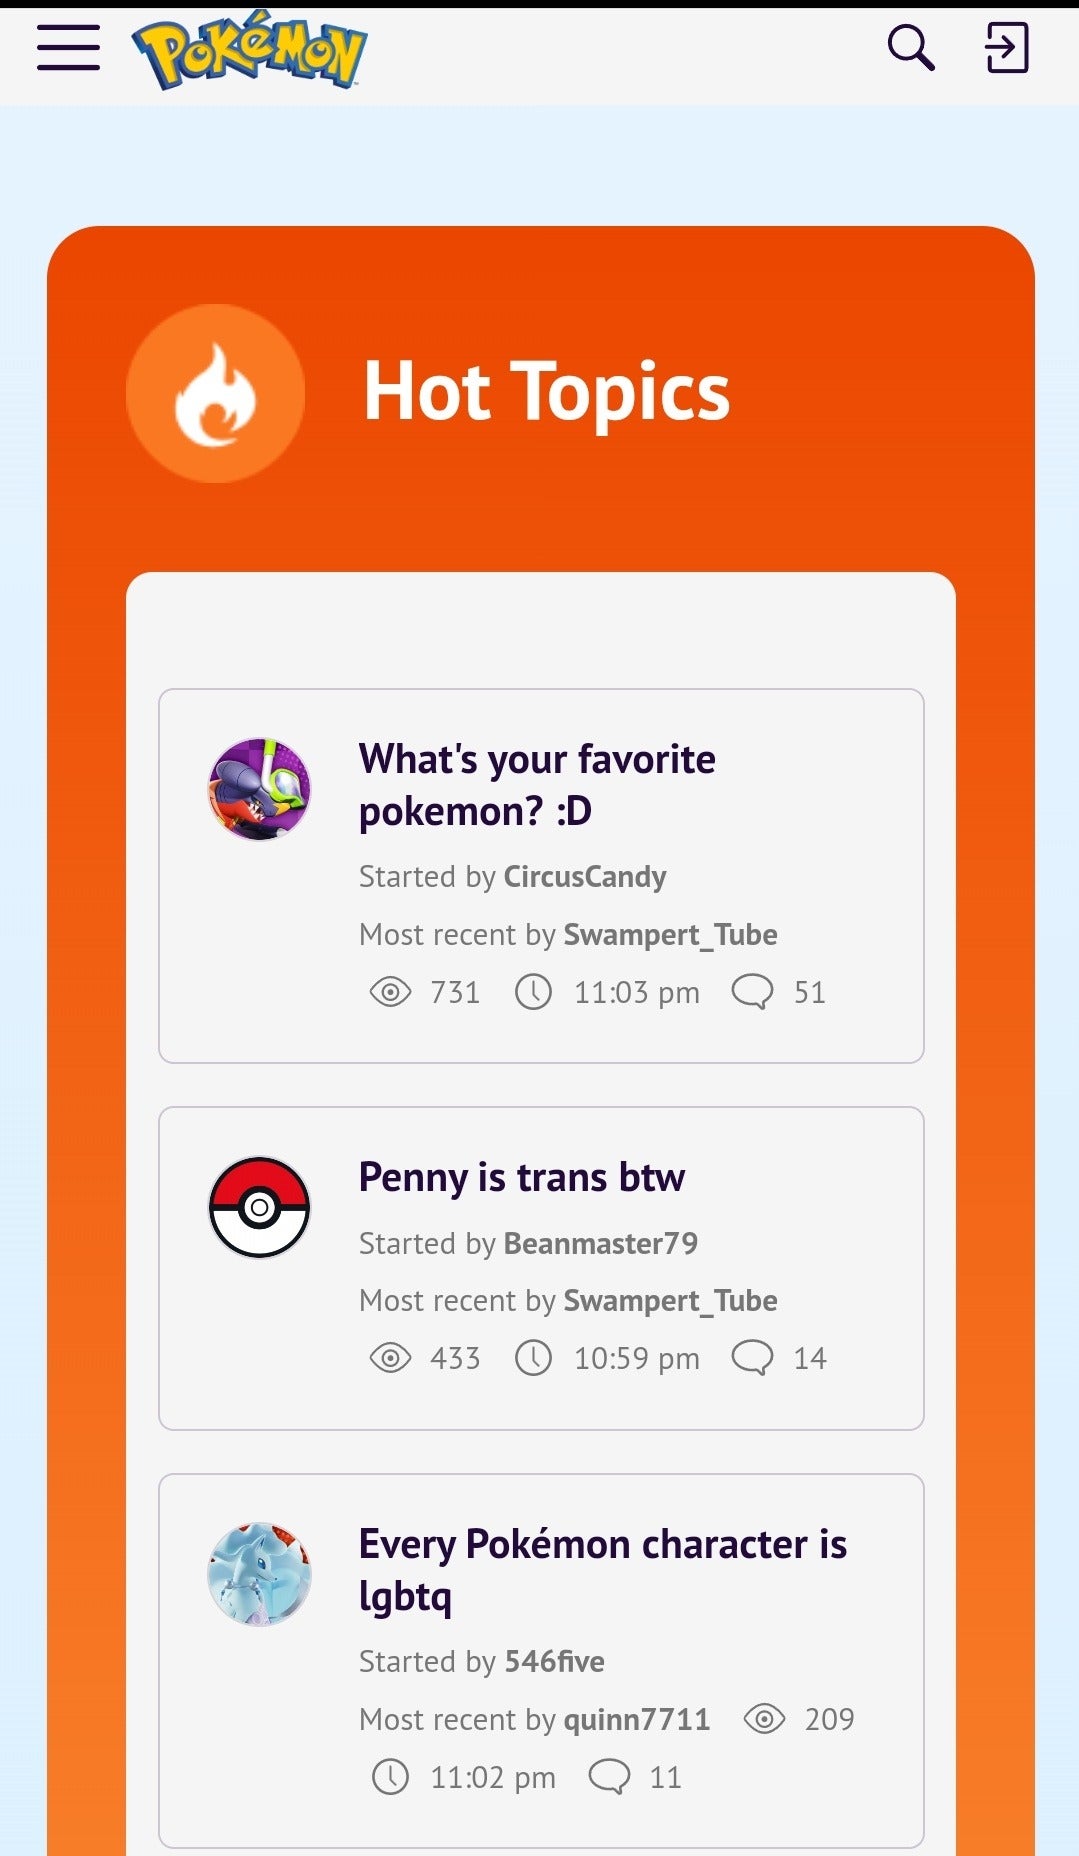 Se muestran los temas del foro, incl. "penny cross por cierto," Y "Todos los personajes de Pokémon son LGBTQ."